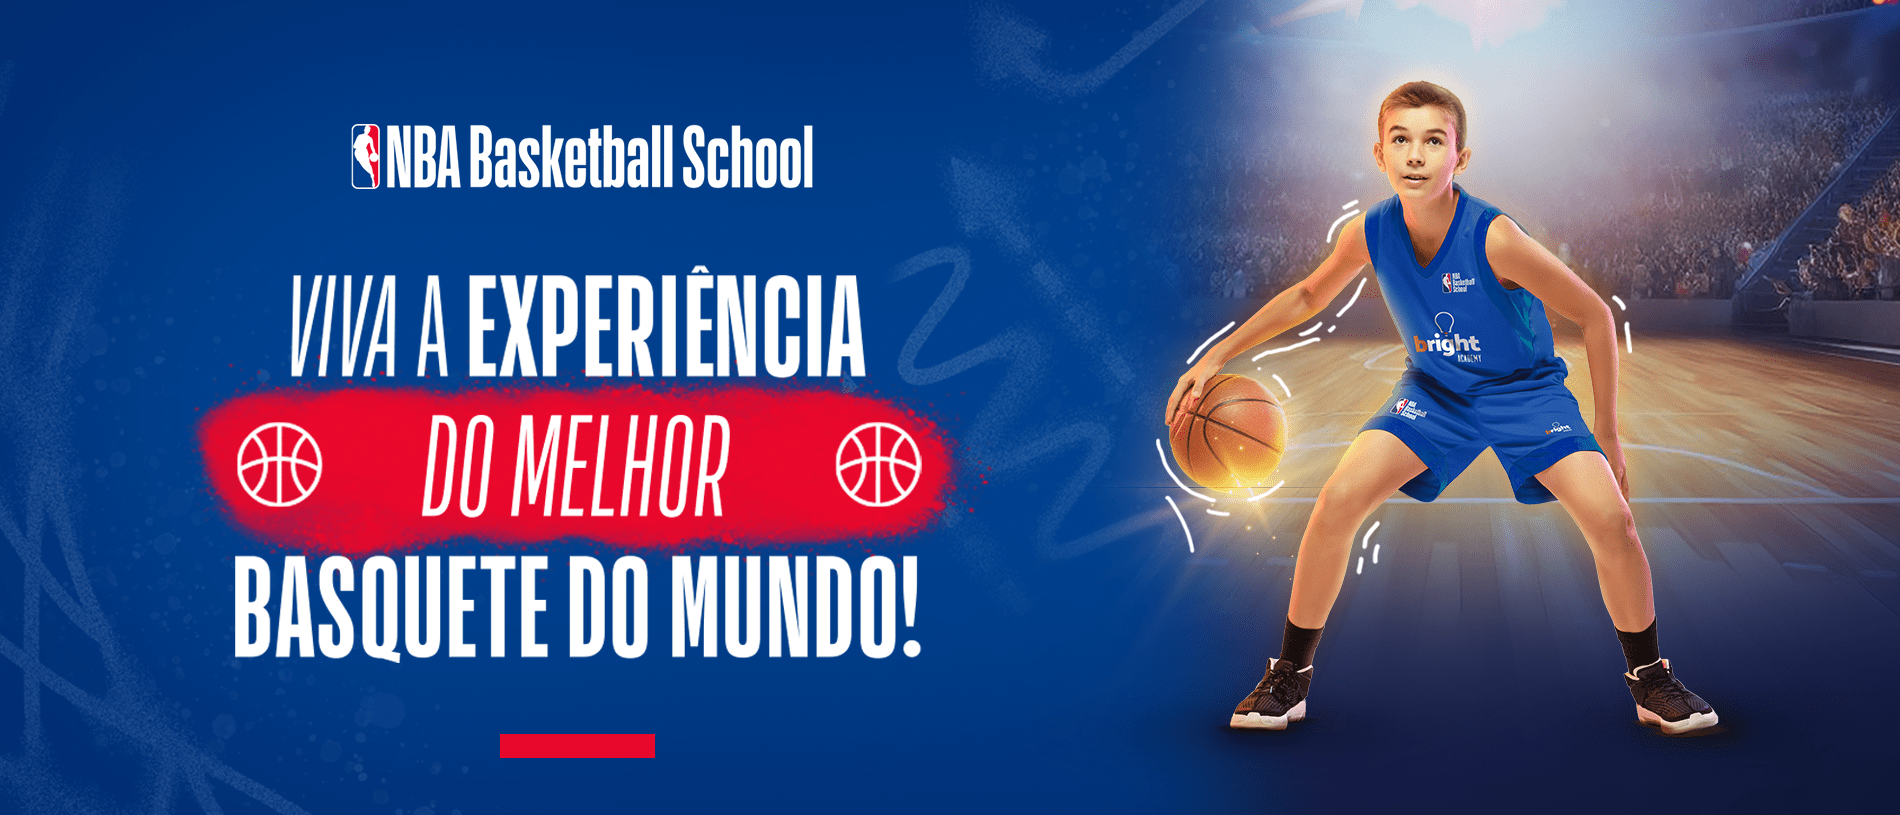 Jovem jogador de basquete, vestindo uniforme da NBA Basketball School, com texto ao lado "viva a experiencia do melhor basquete do mundo!".